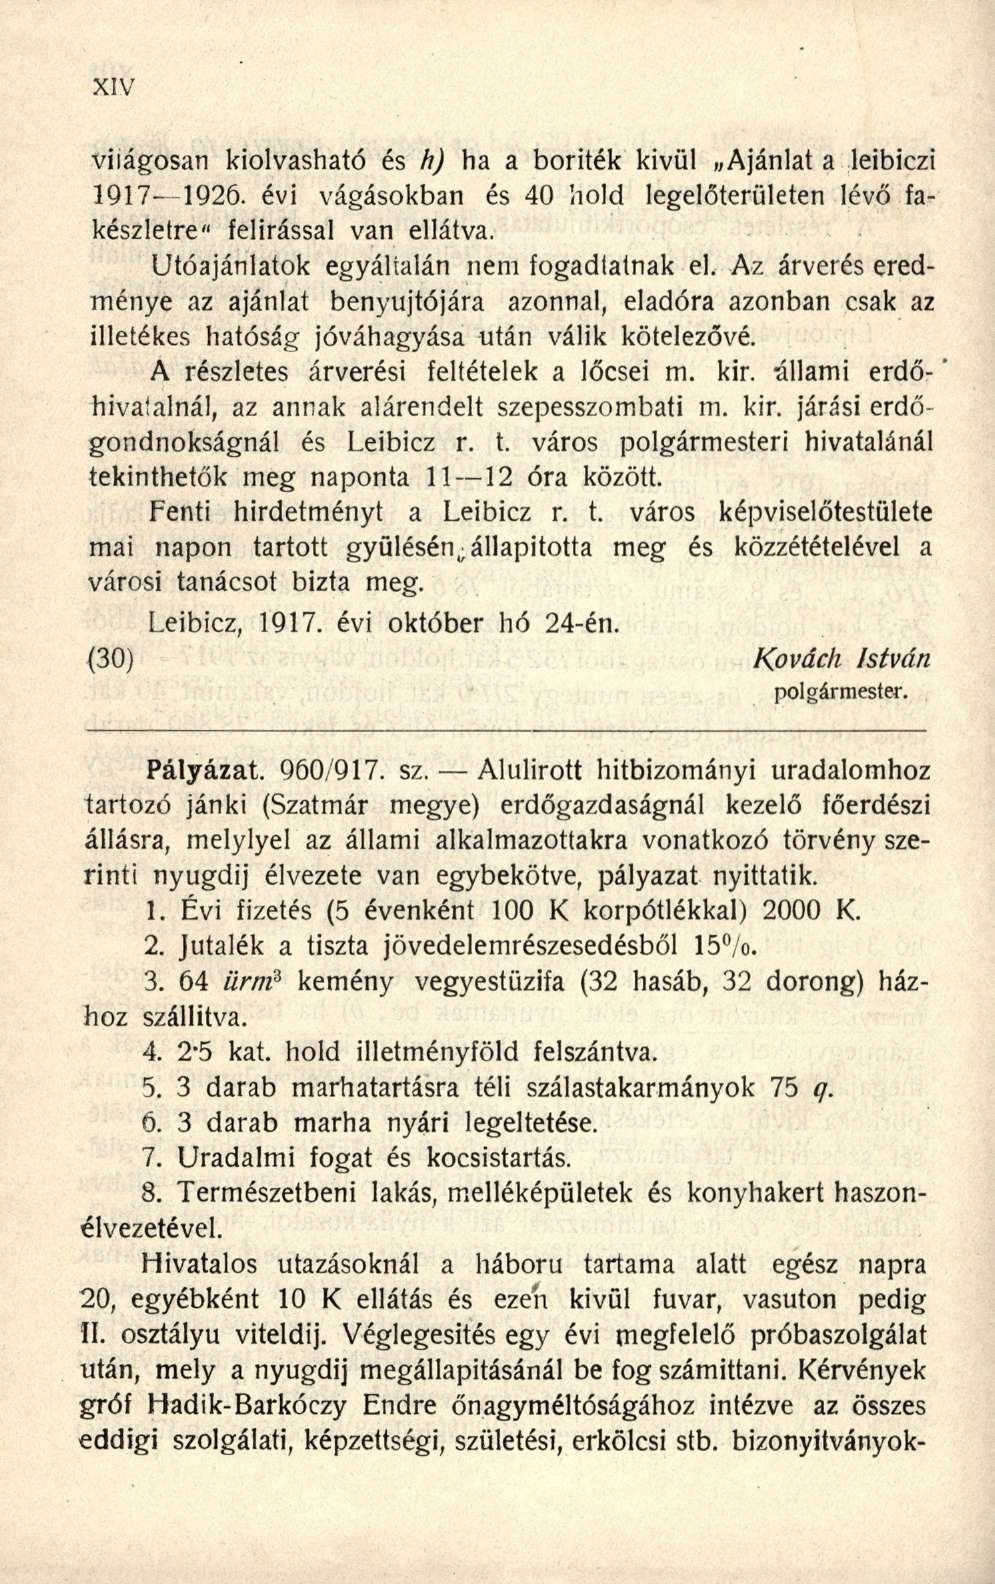 világosan kiolvasható és h) ha a boriték kivül Ajánlat a leibiczi 1917-1Q26. évi vágásokban és 40 hold legelőterületen lévő fakészletre" felírással van ellátva.